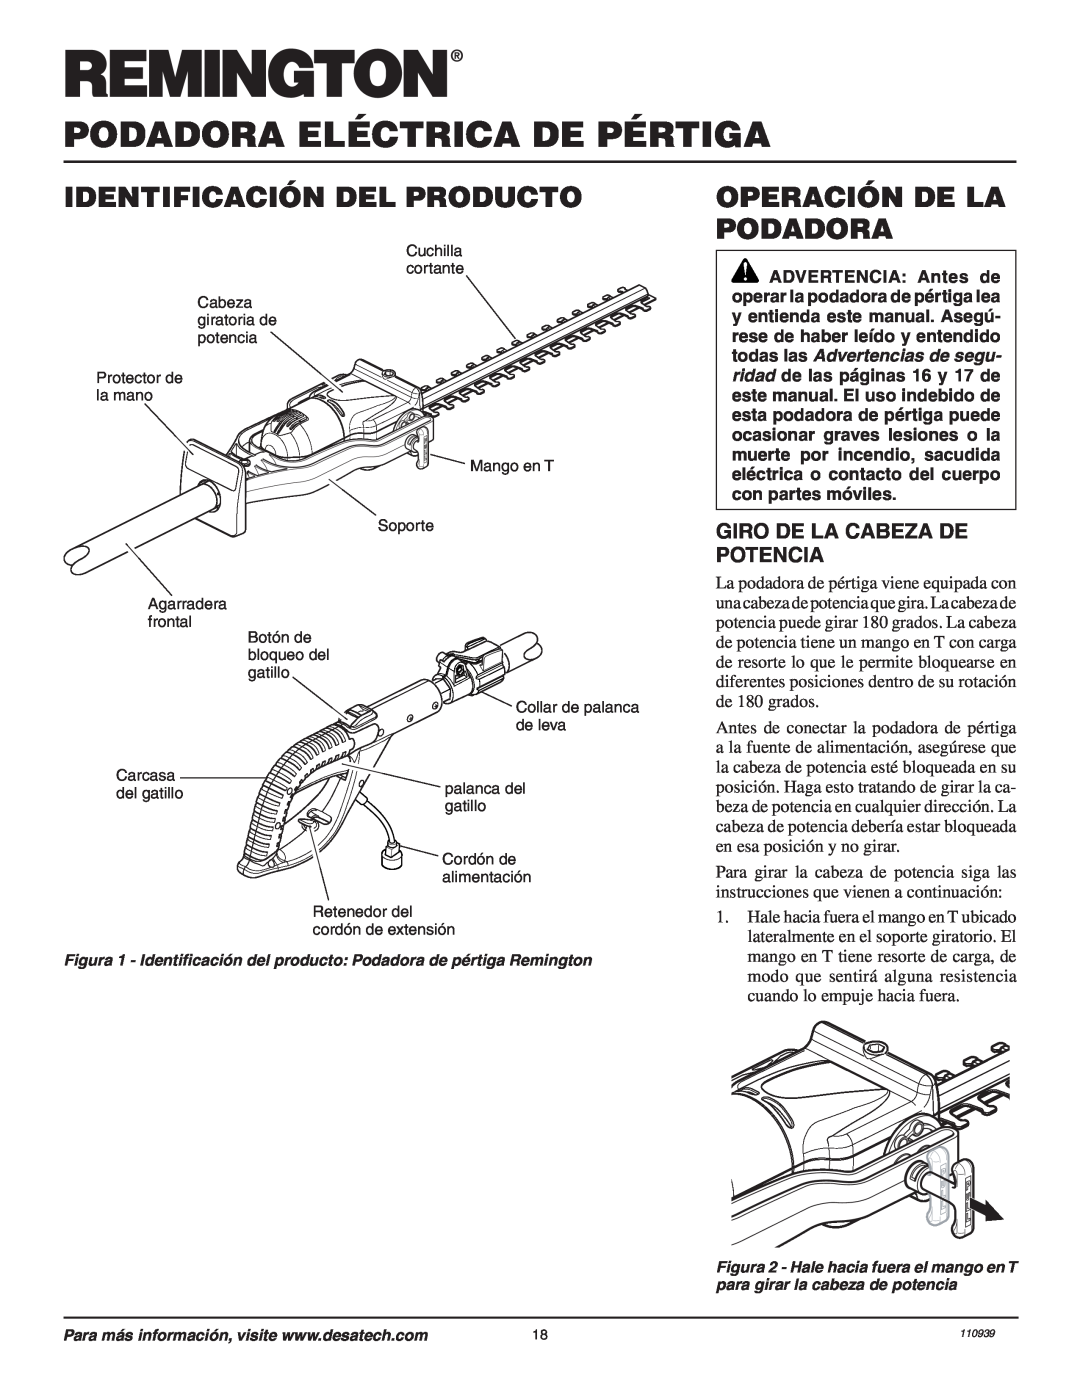 Remington 110946-01A owner manual Identificación Del Producto, Operación De La Podadora, Giro De La Cabeza De Potencia 